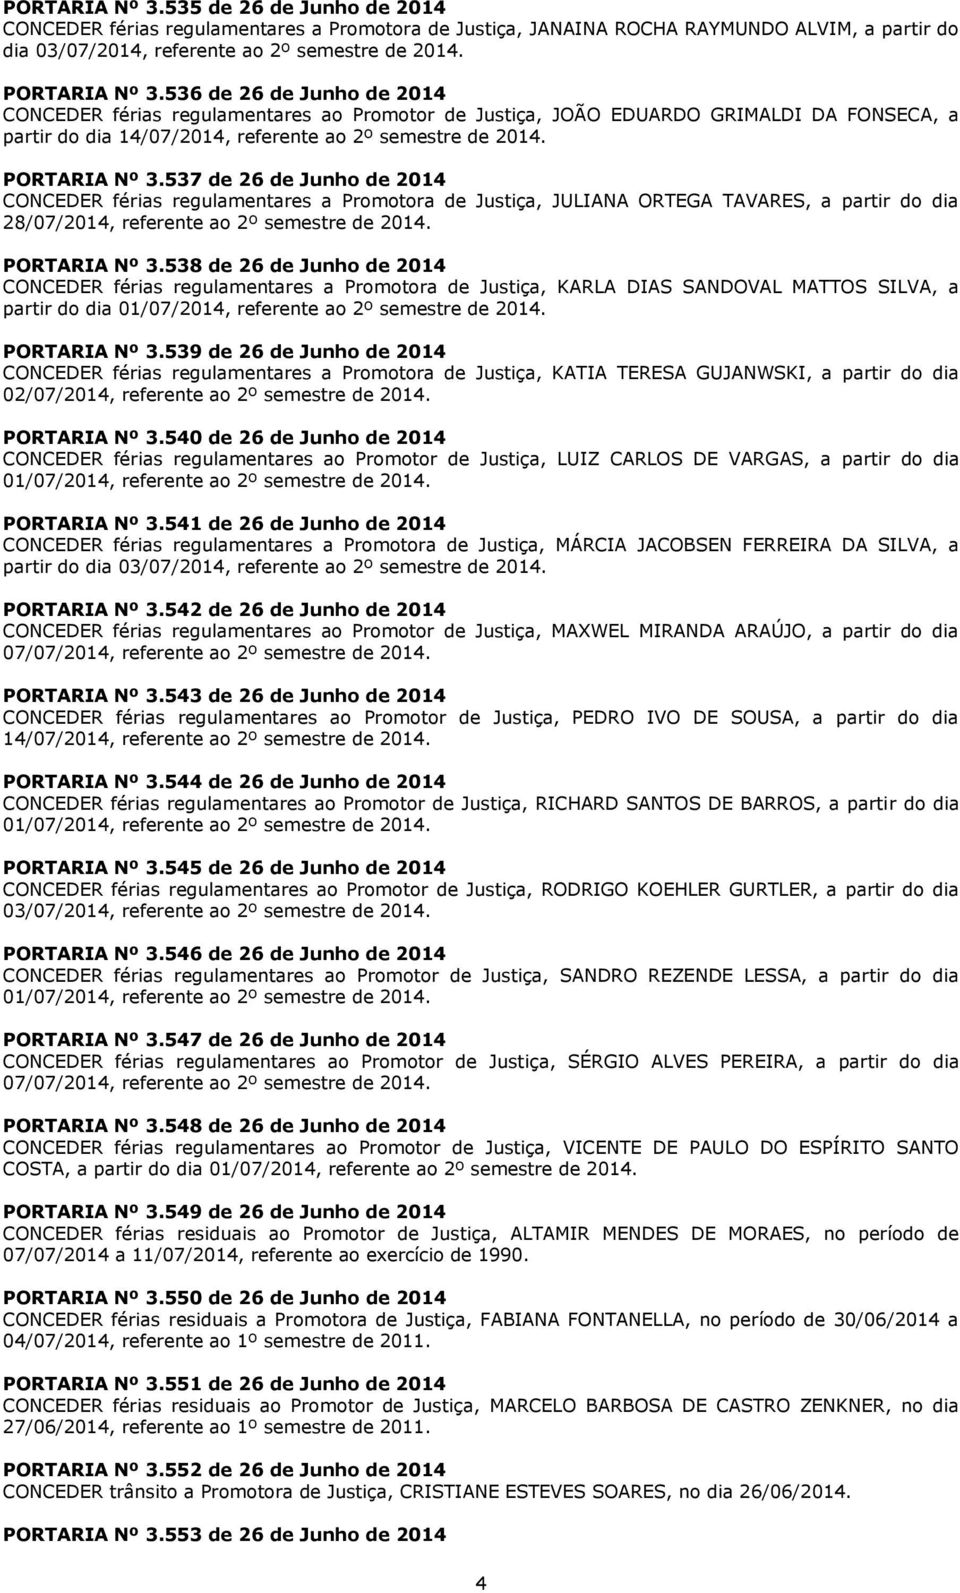 PORTARIA Nº 3.537 de 26 de Junho de 2014 CONCEDER férias regulamentares a Promotora de Justiça, JULIANA ORTEGA TAVARES, a partir do dia 28/07/2014, referente ao 2º semestre de 2014. PORTARIA Nº 3.